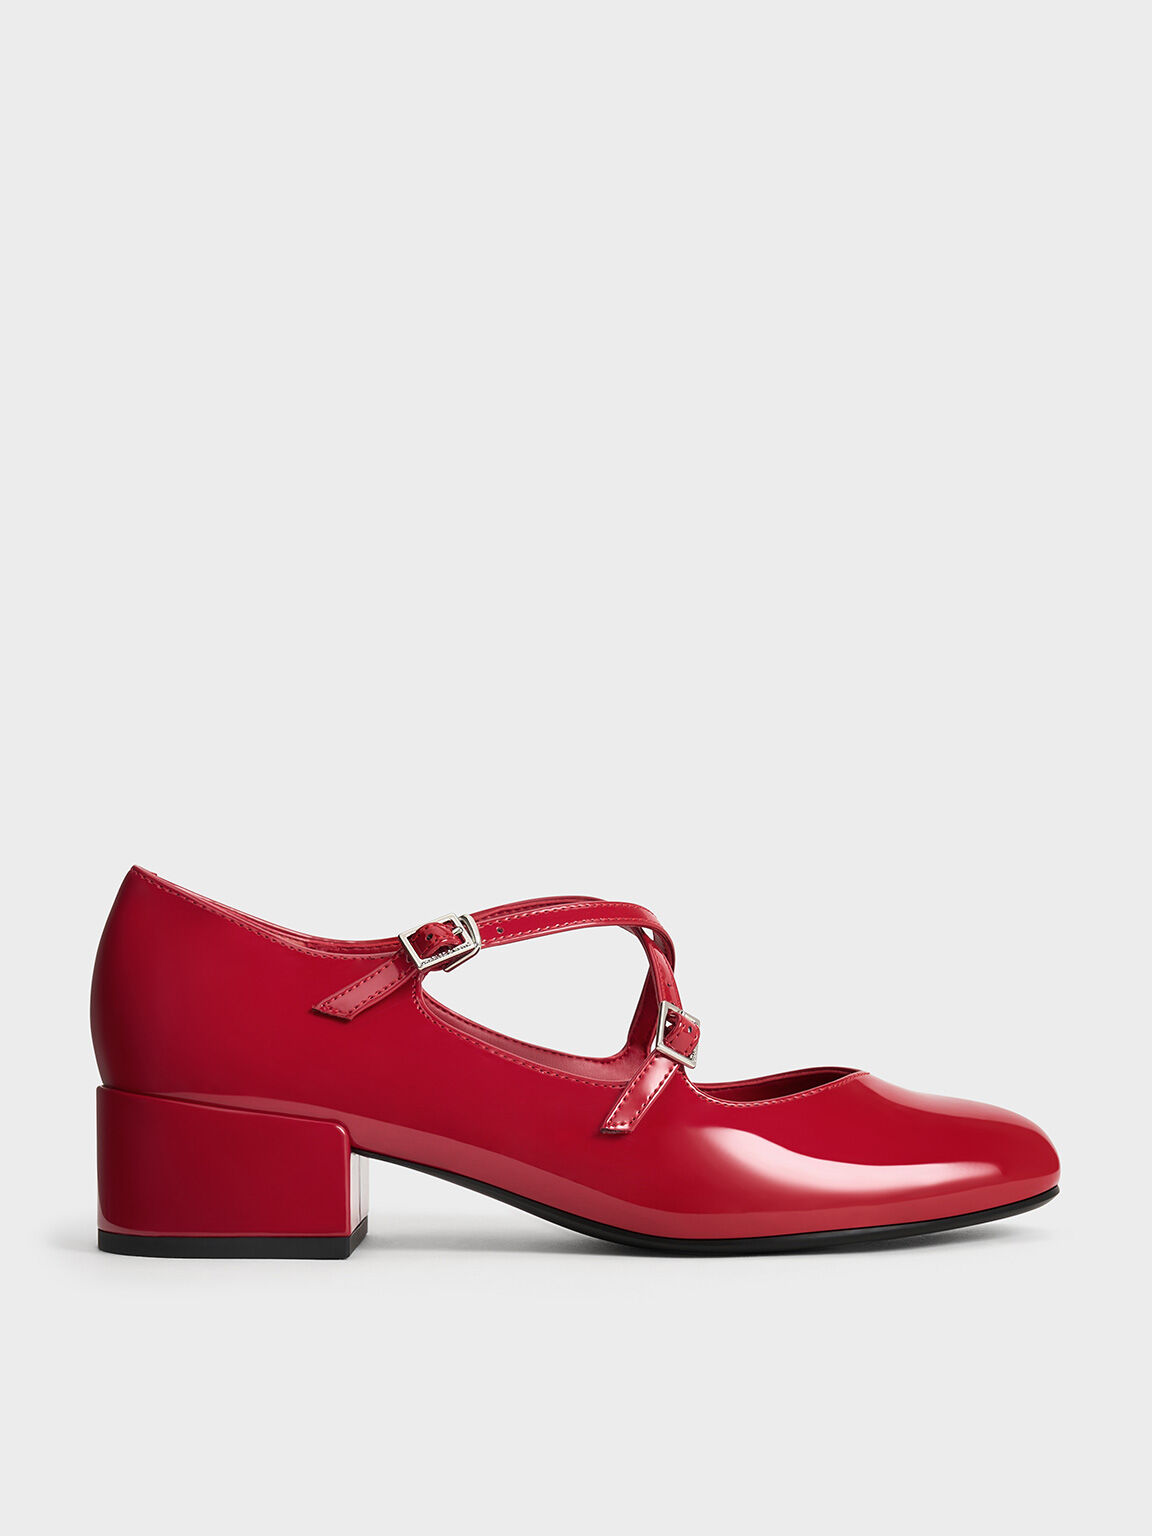 รองเท้าแมรี่เจนหนังแก้วเสริมส้นบล็อคดีไซน์สายคาดแบบไขว้, สีแดง, hi-res